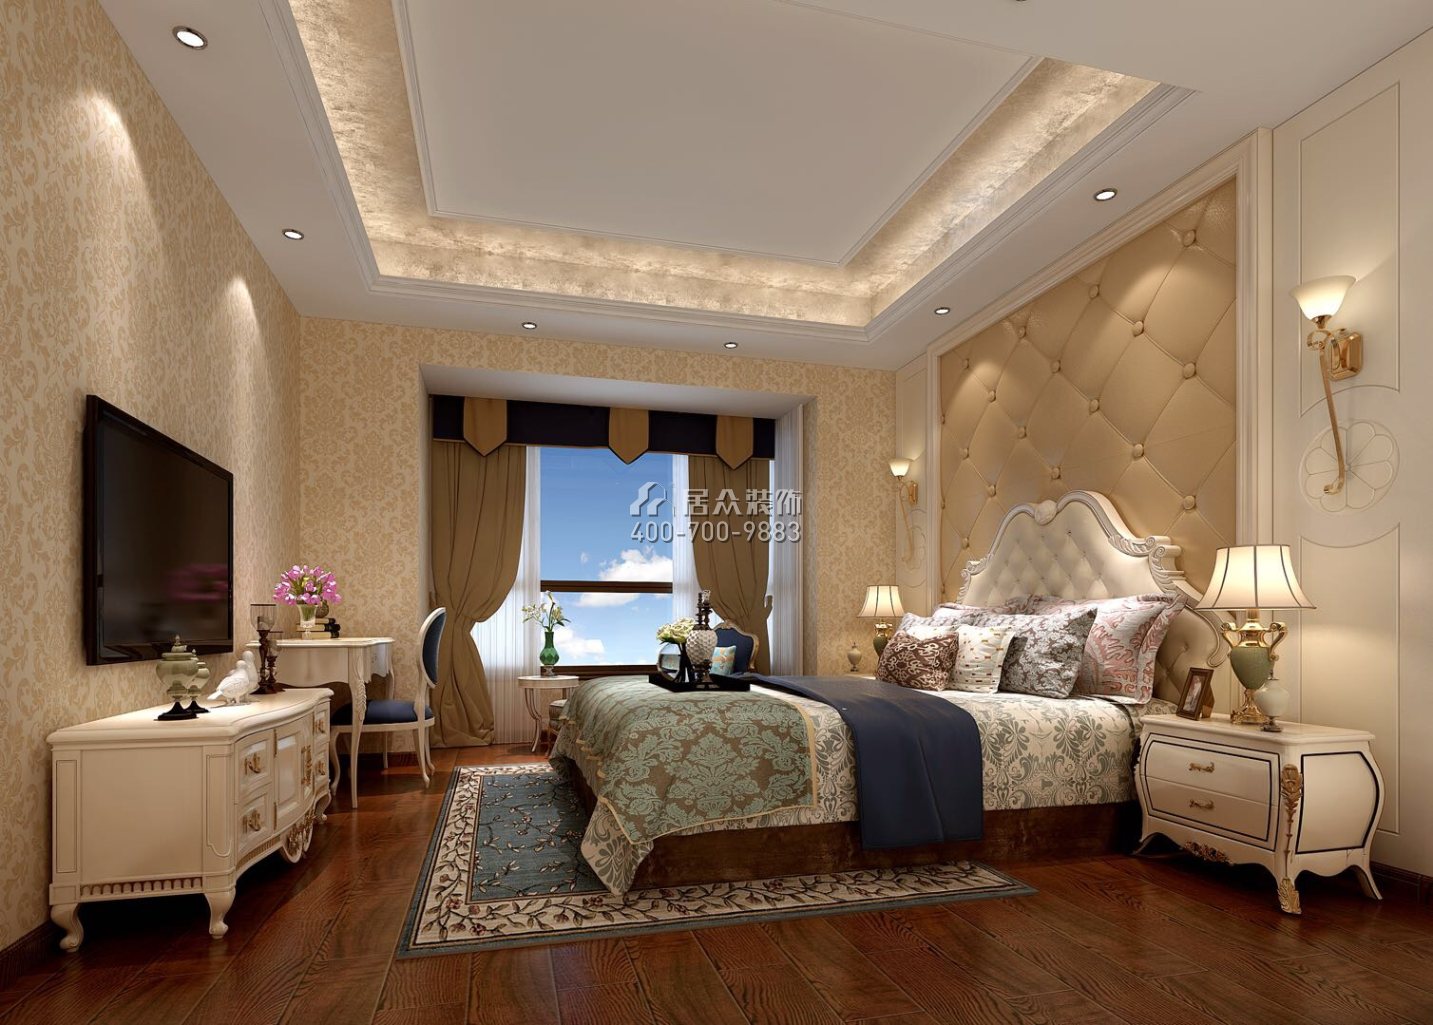 方直星耀国际花园170平方米欧式风格平层户型卧室装修效果图